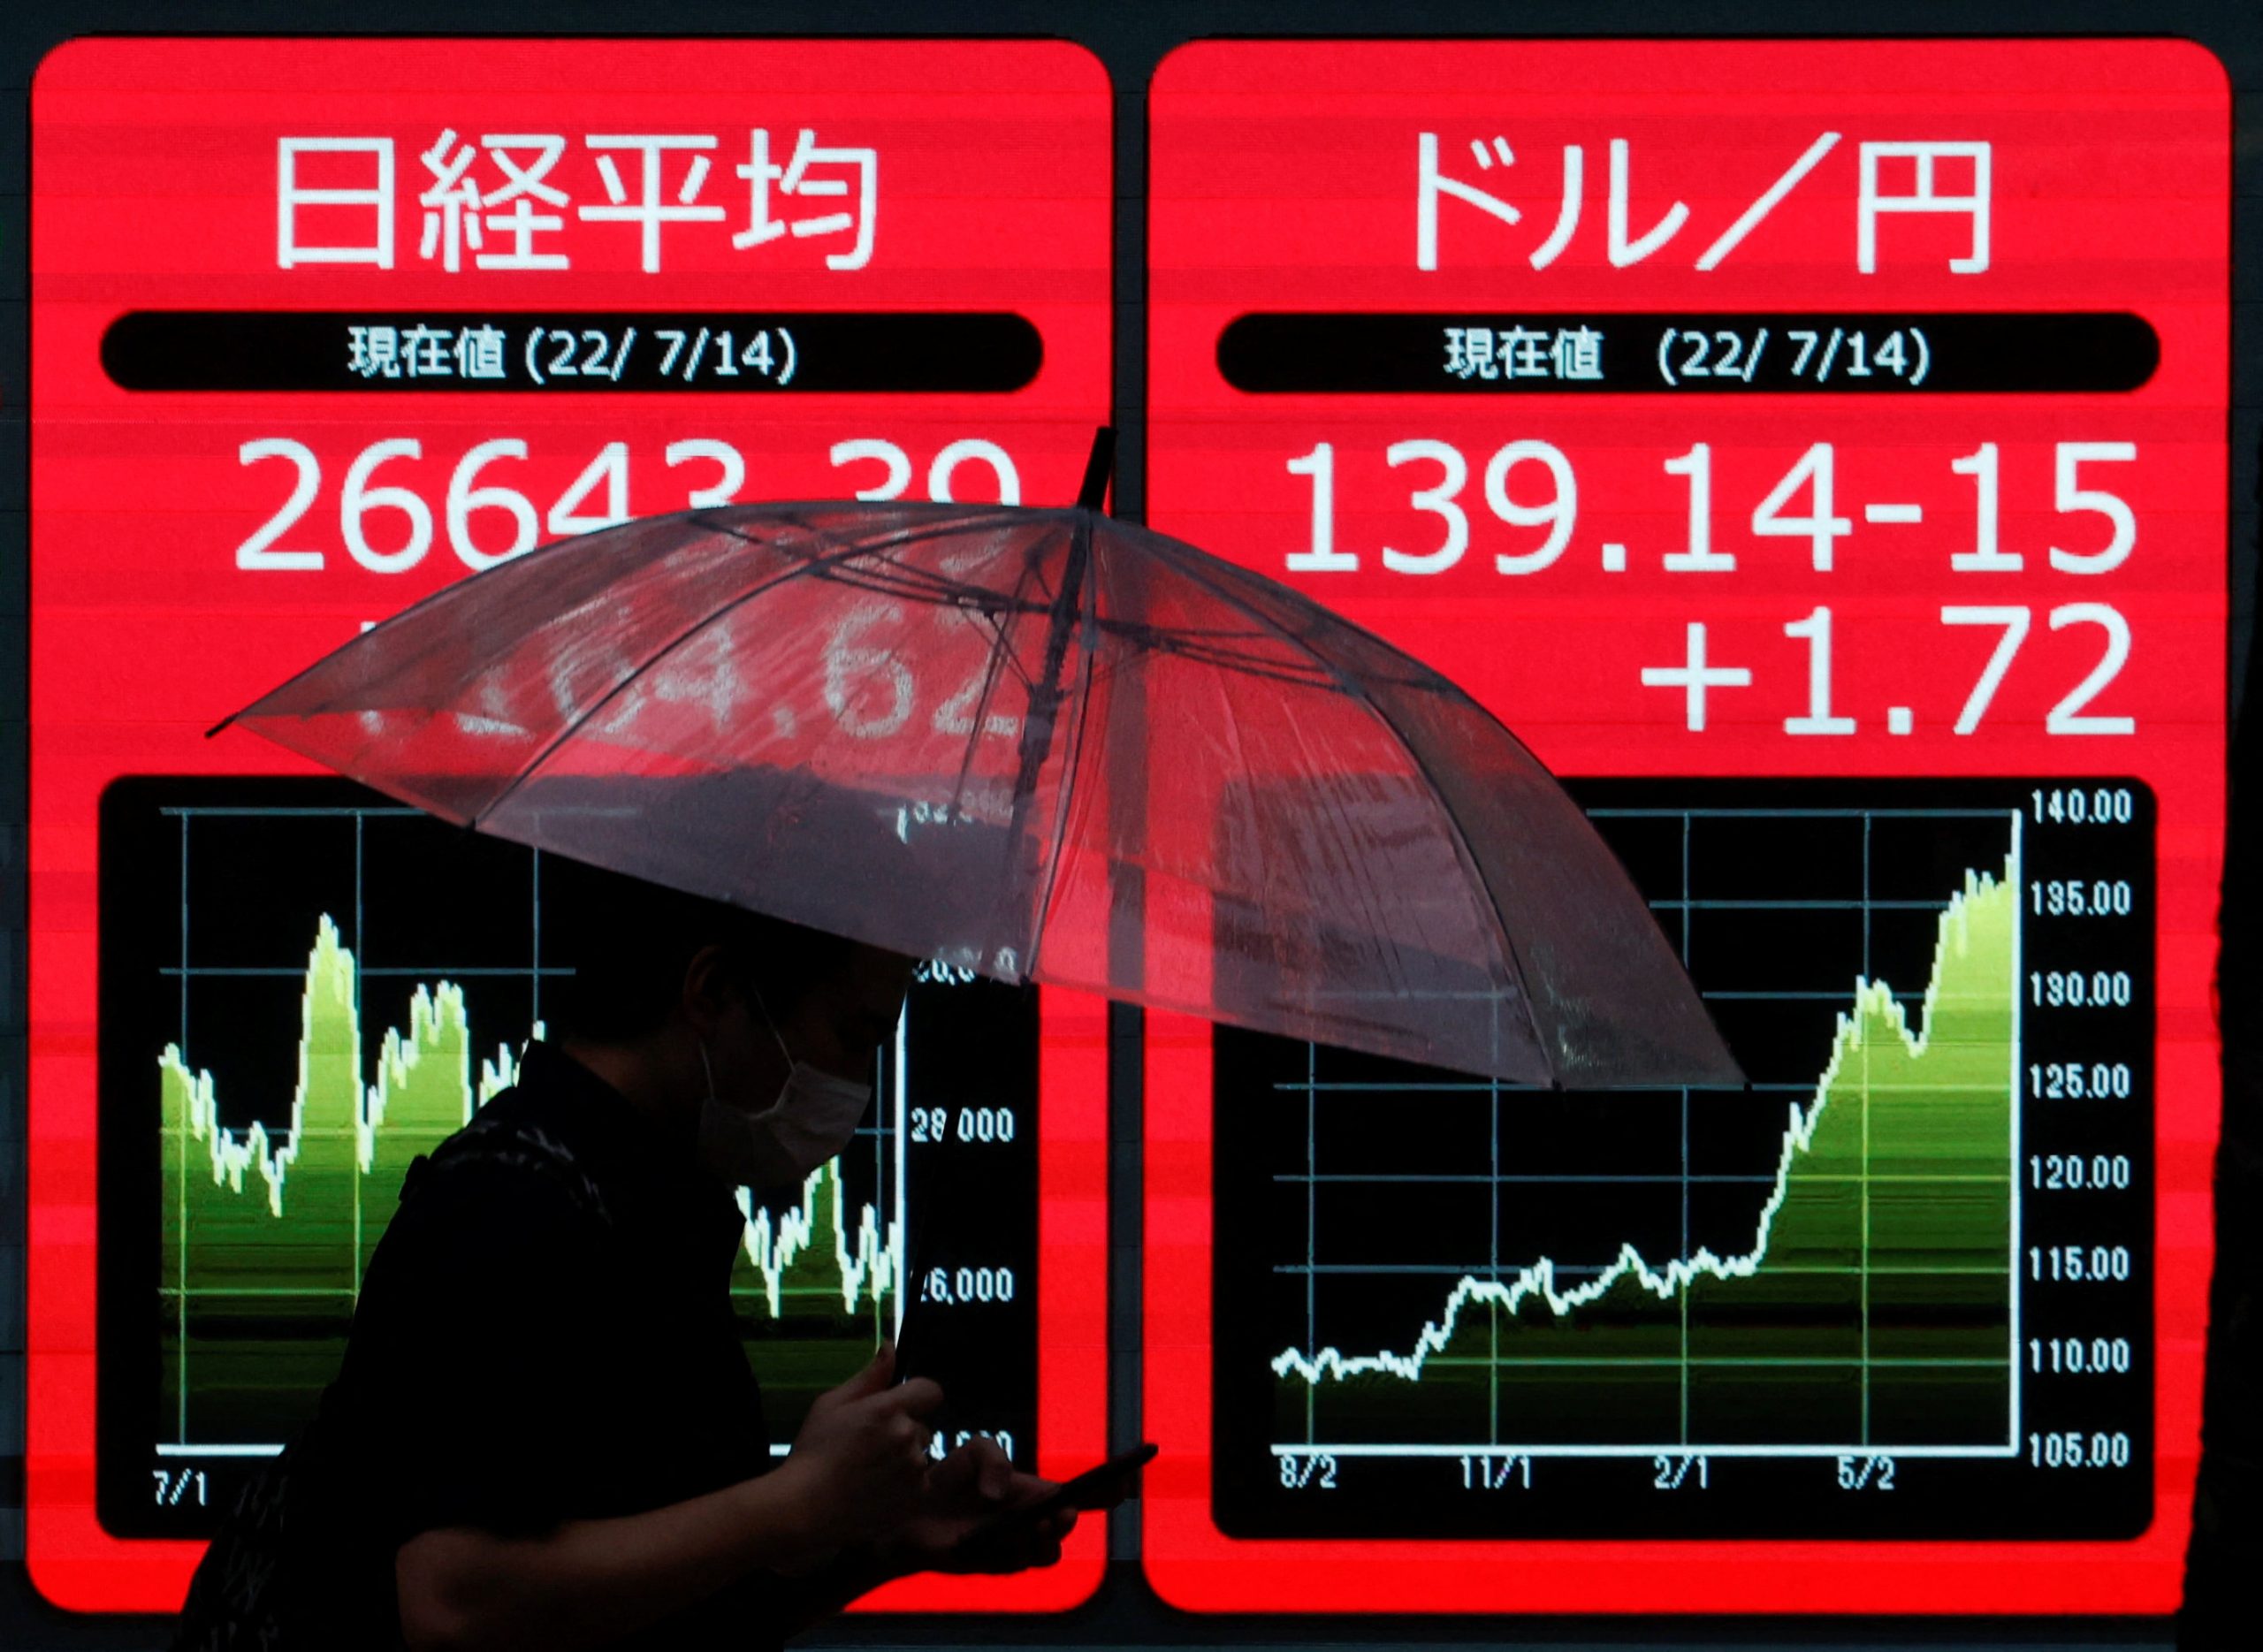 หุ้นทั่วโลกนิ่ง นักลงทุนยังกังวลการ Re-opening ของจีน